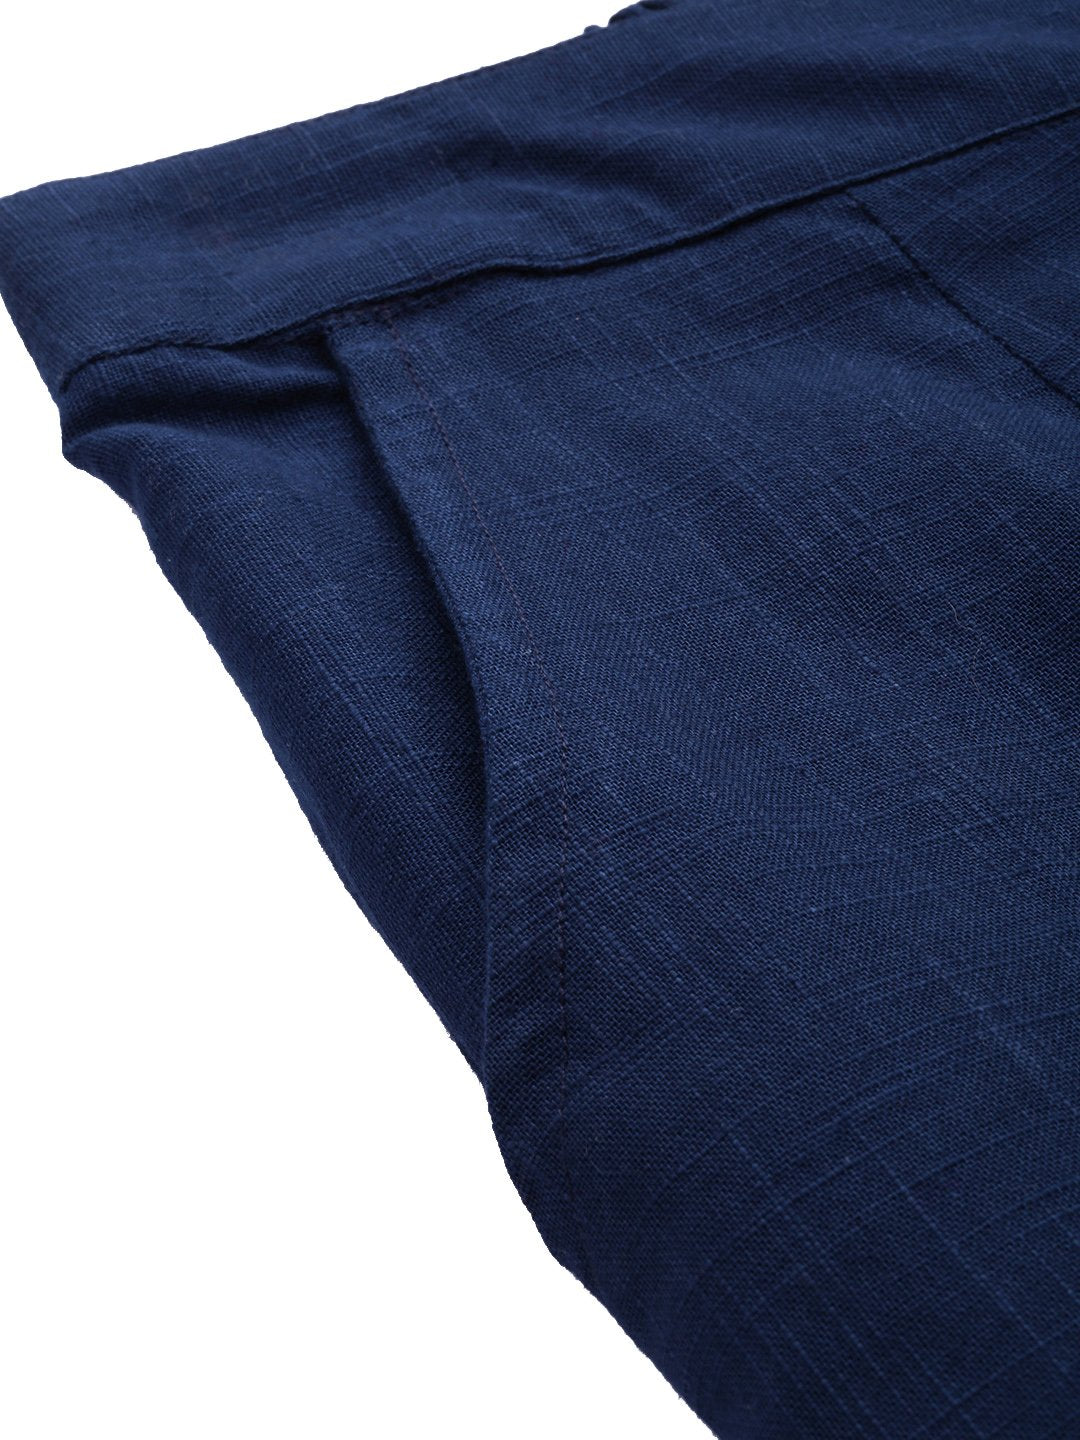 Women's Blue Cotton Trouser - Divena